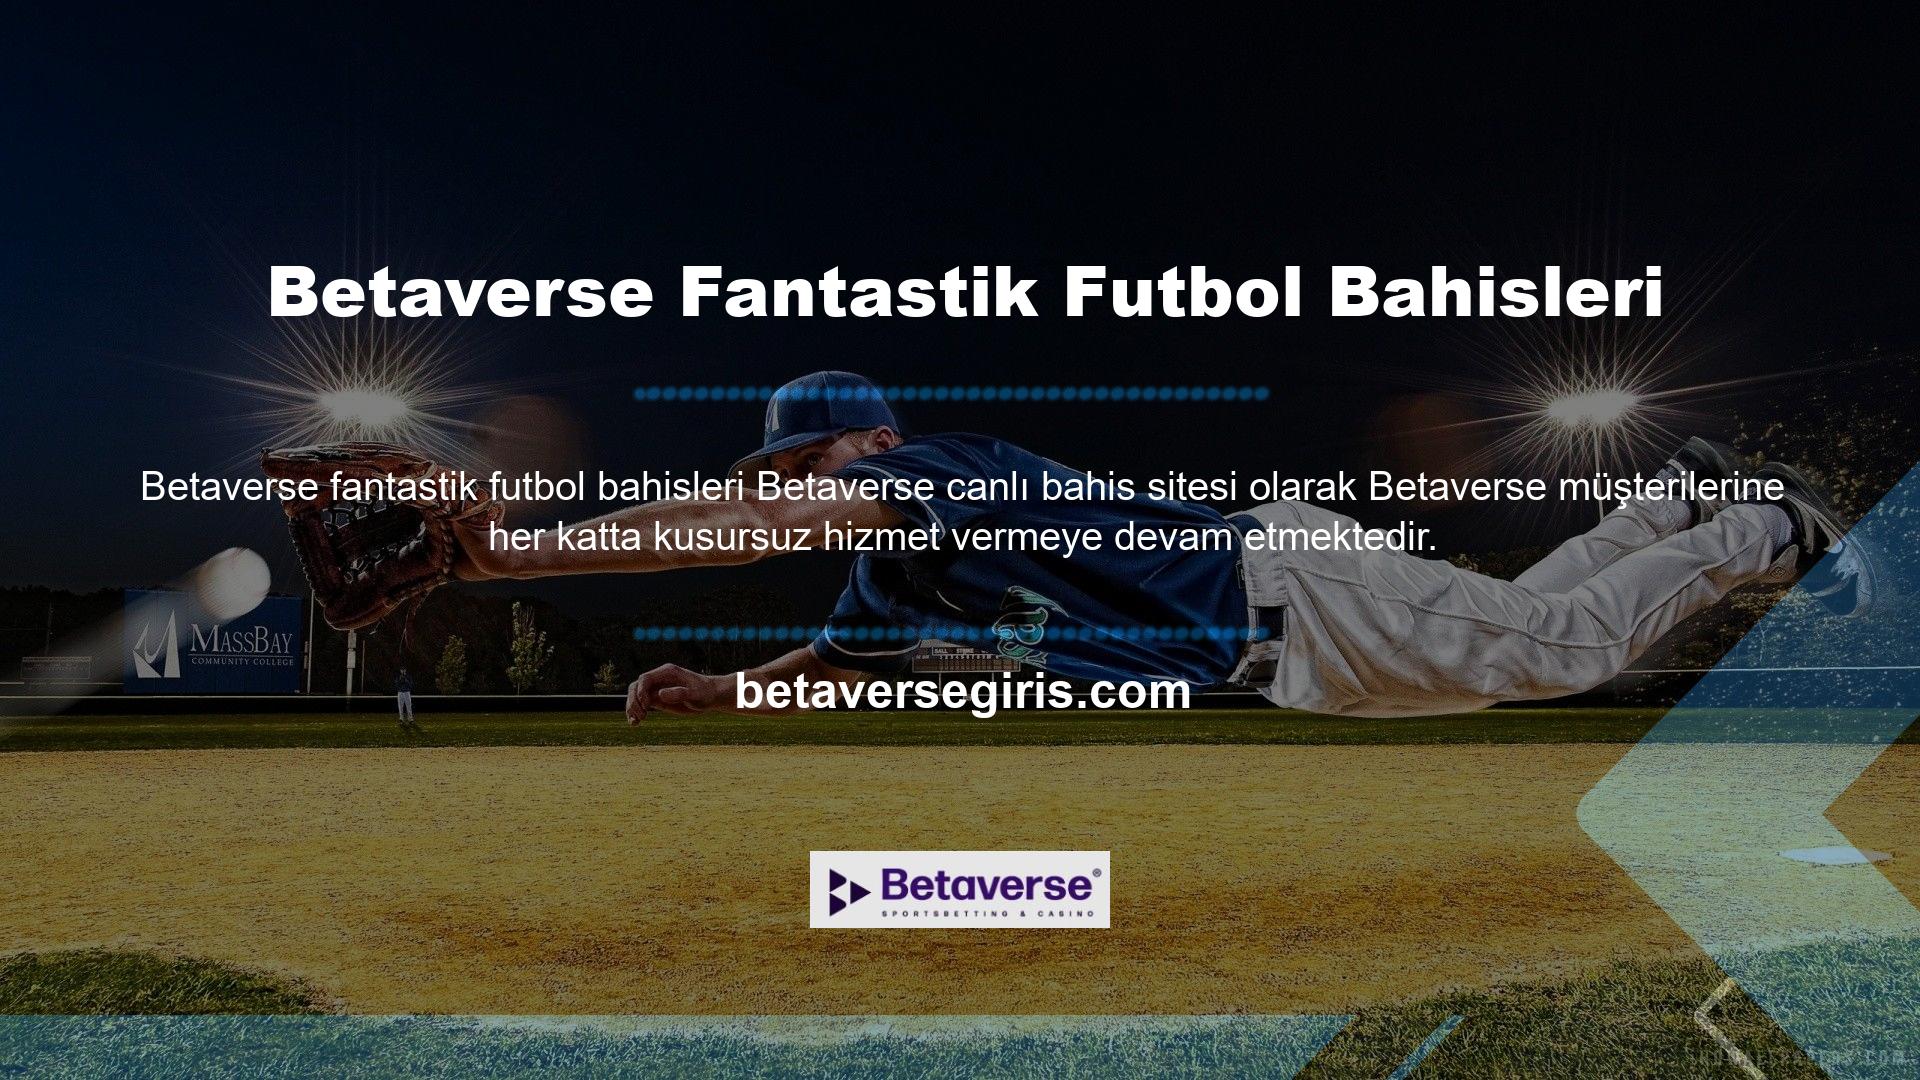 Betaverse Sanal Futbolu, müşterilerin FIFA ve diğer harika oyunlarda futbol bahislerinin heyecanını yaşamalarına olanak tanır